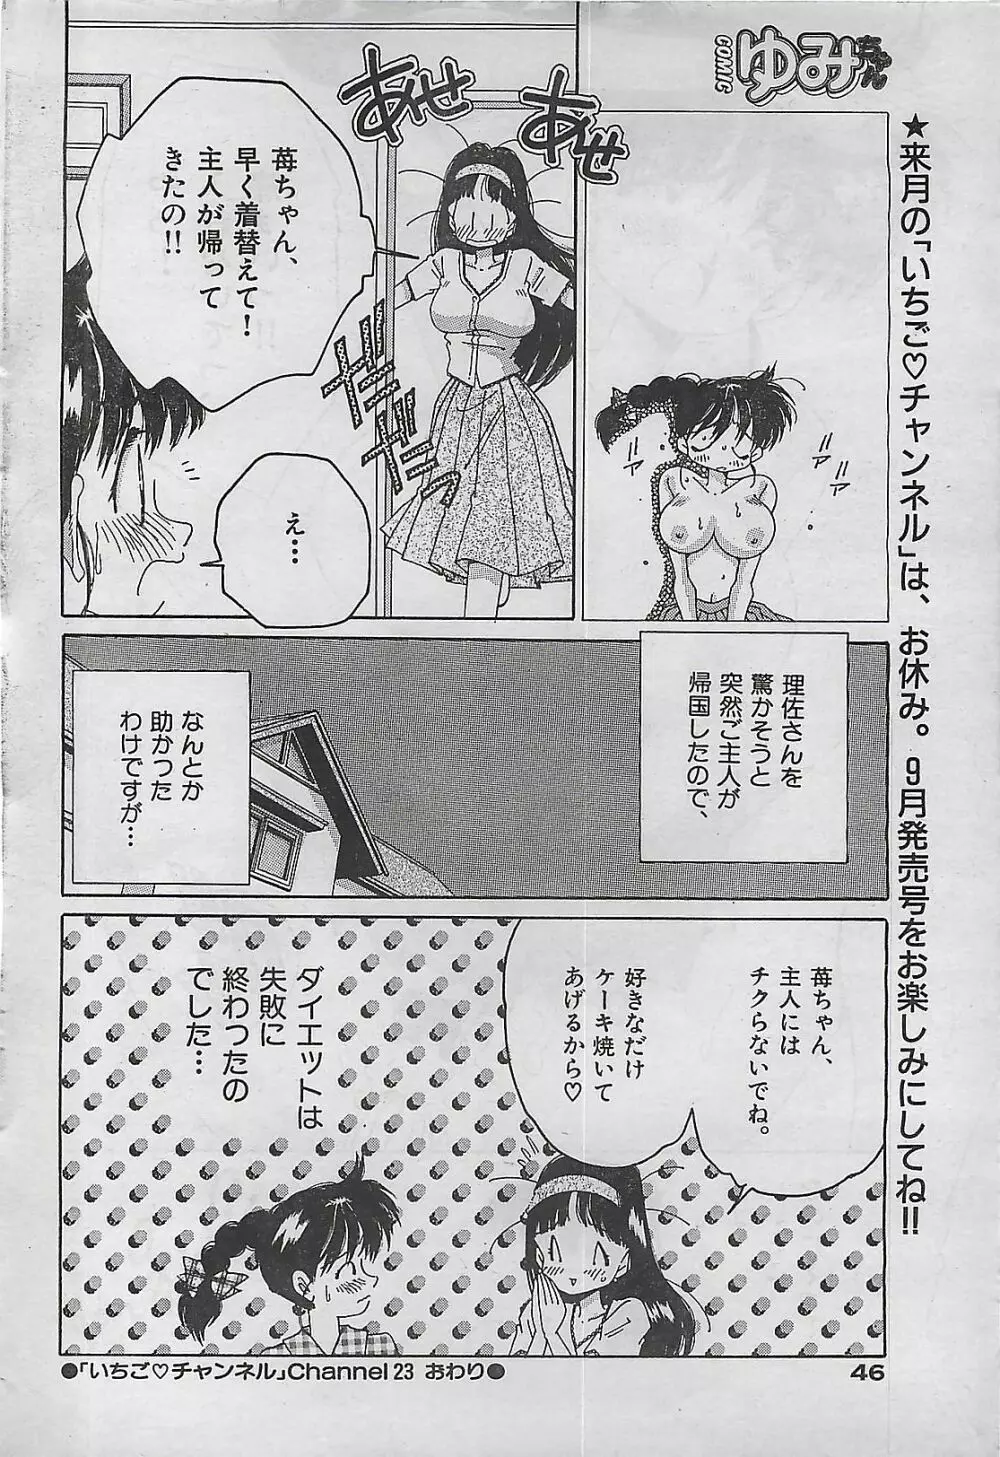 COMIC ゆみちゃん No.2 1995年08月号 46ページ